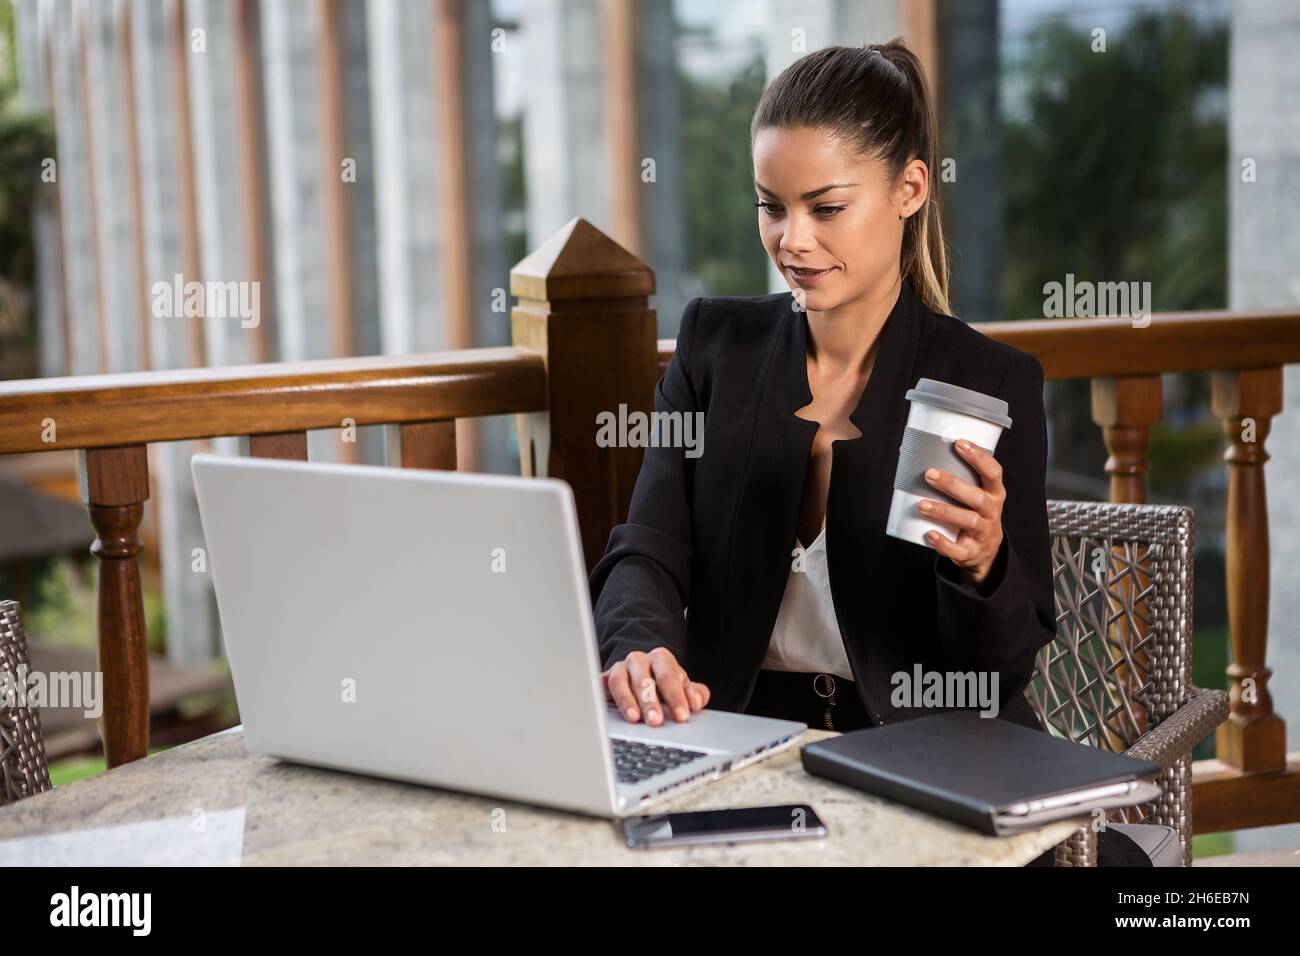 Jolie femme moderne dans un élégant costume de surf ordinateur portable et de prendre une tasse de café tout en étant assis à une table sur la terrasse Banque D'Images